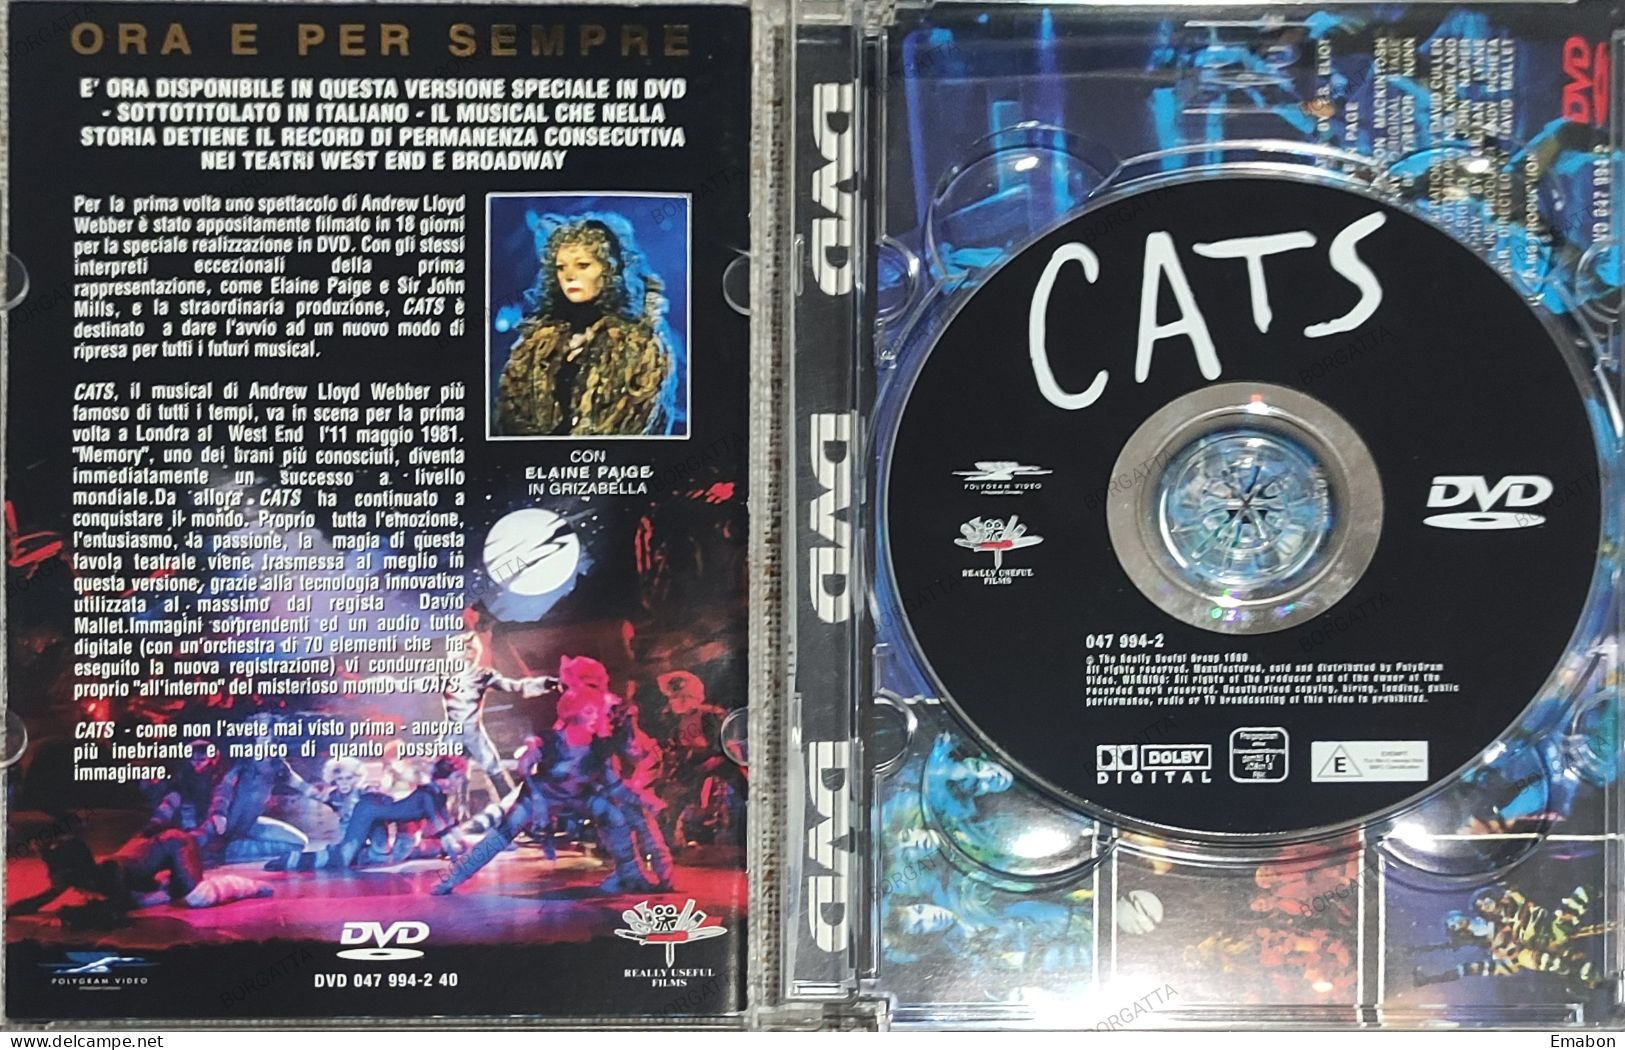 BORGATTA - MUSICAL-  Dvd CATS - ANDREW LLOYD WEBBER - THE REALLY 1998 - USATO In Buono Stato - Commedia Musicale